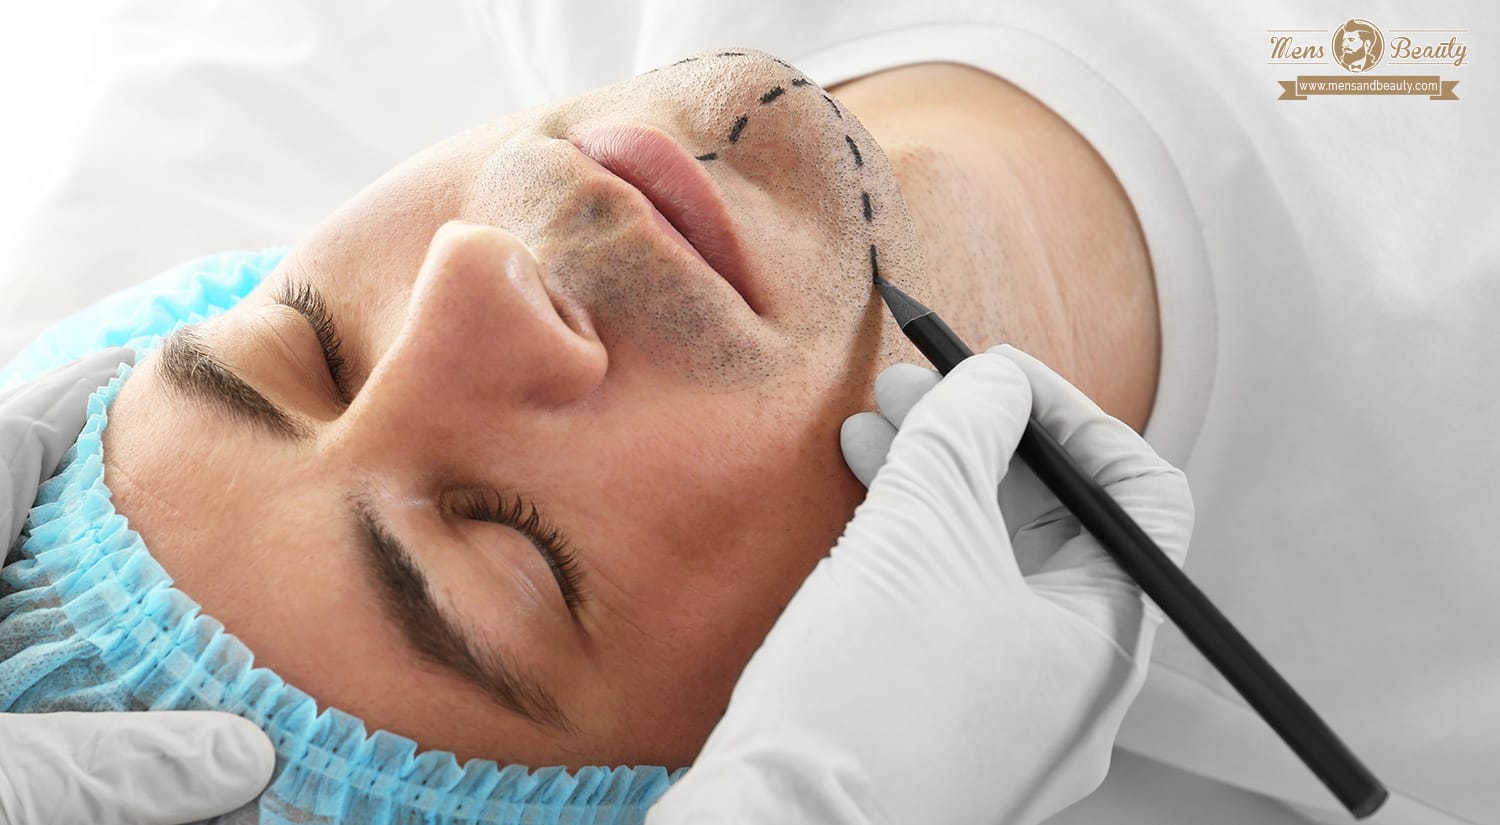 cirugia estetica hombres plastica operaciones tratamientos belleza masculina